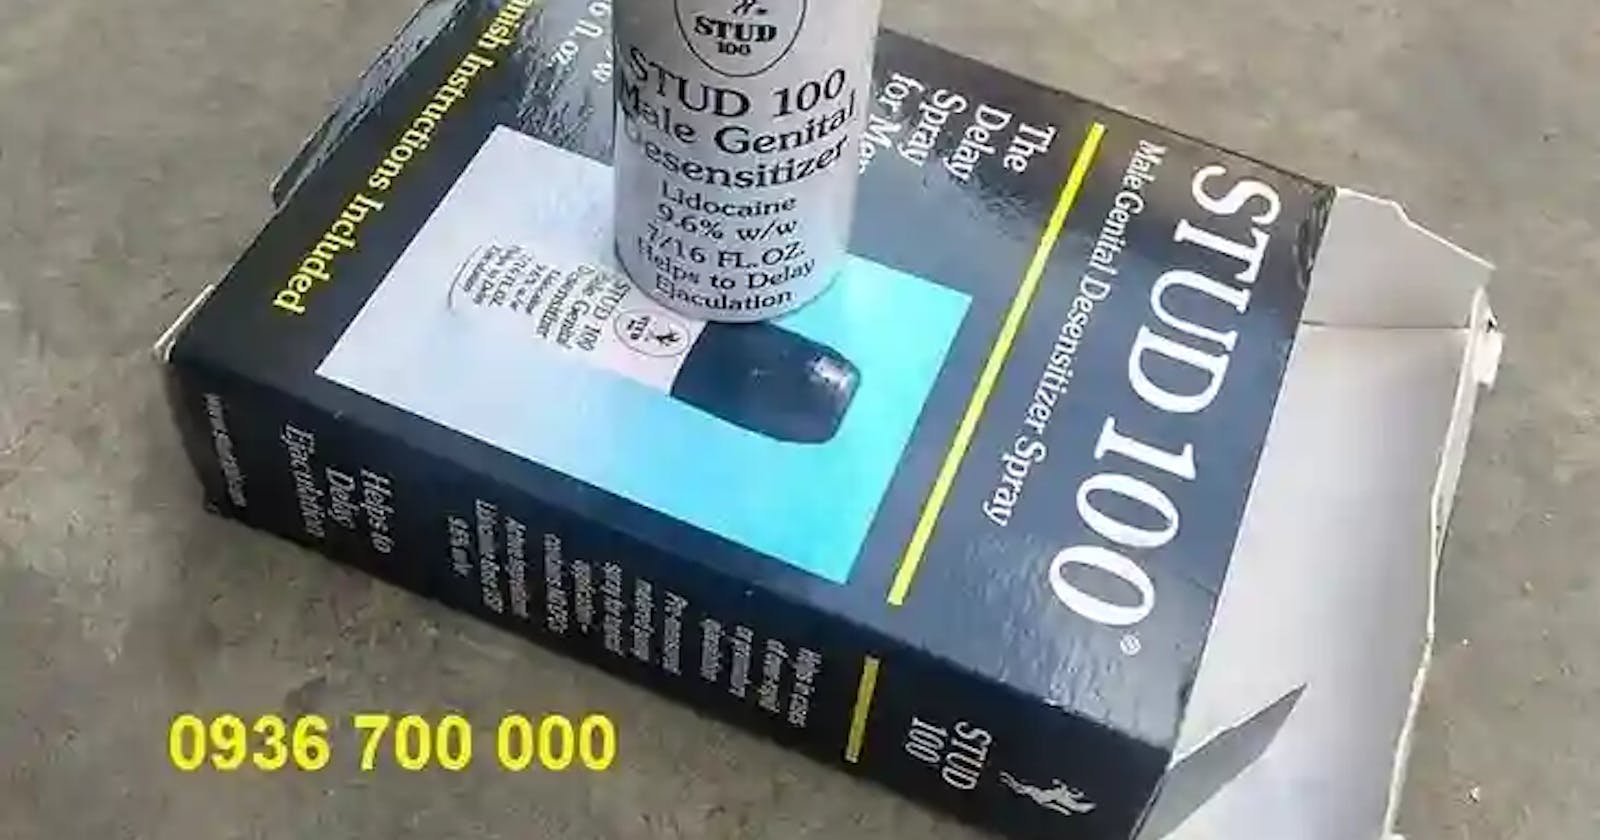 Thuốc xịt stud 100 spray mua bán ở đâu TPHCM Hà Nội